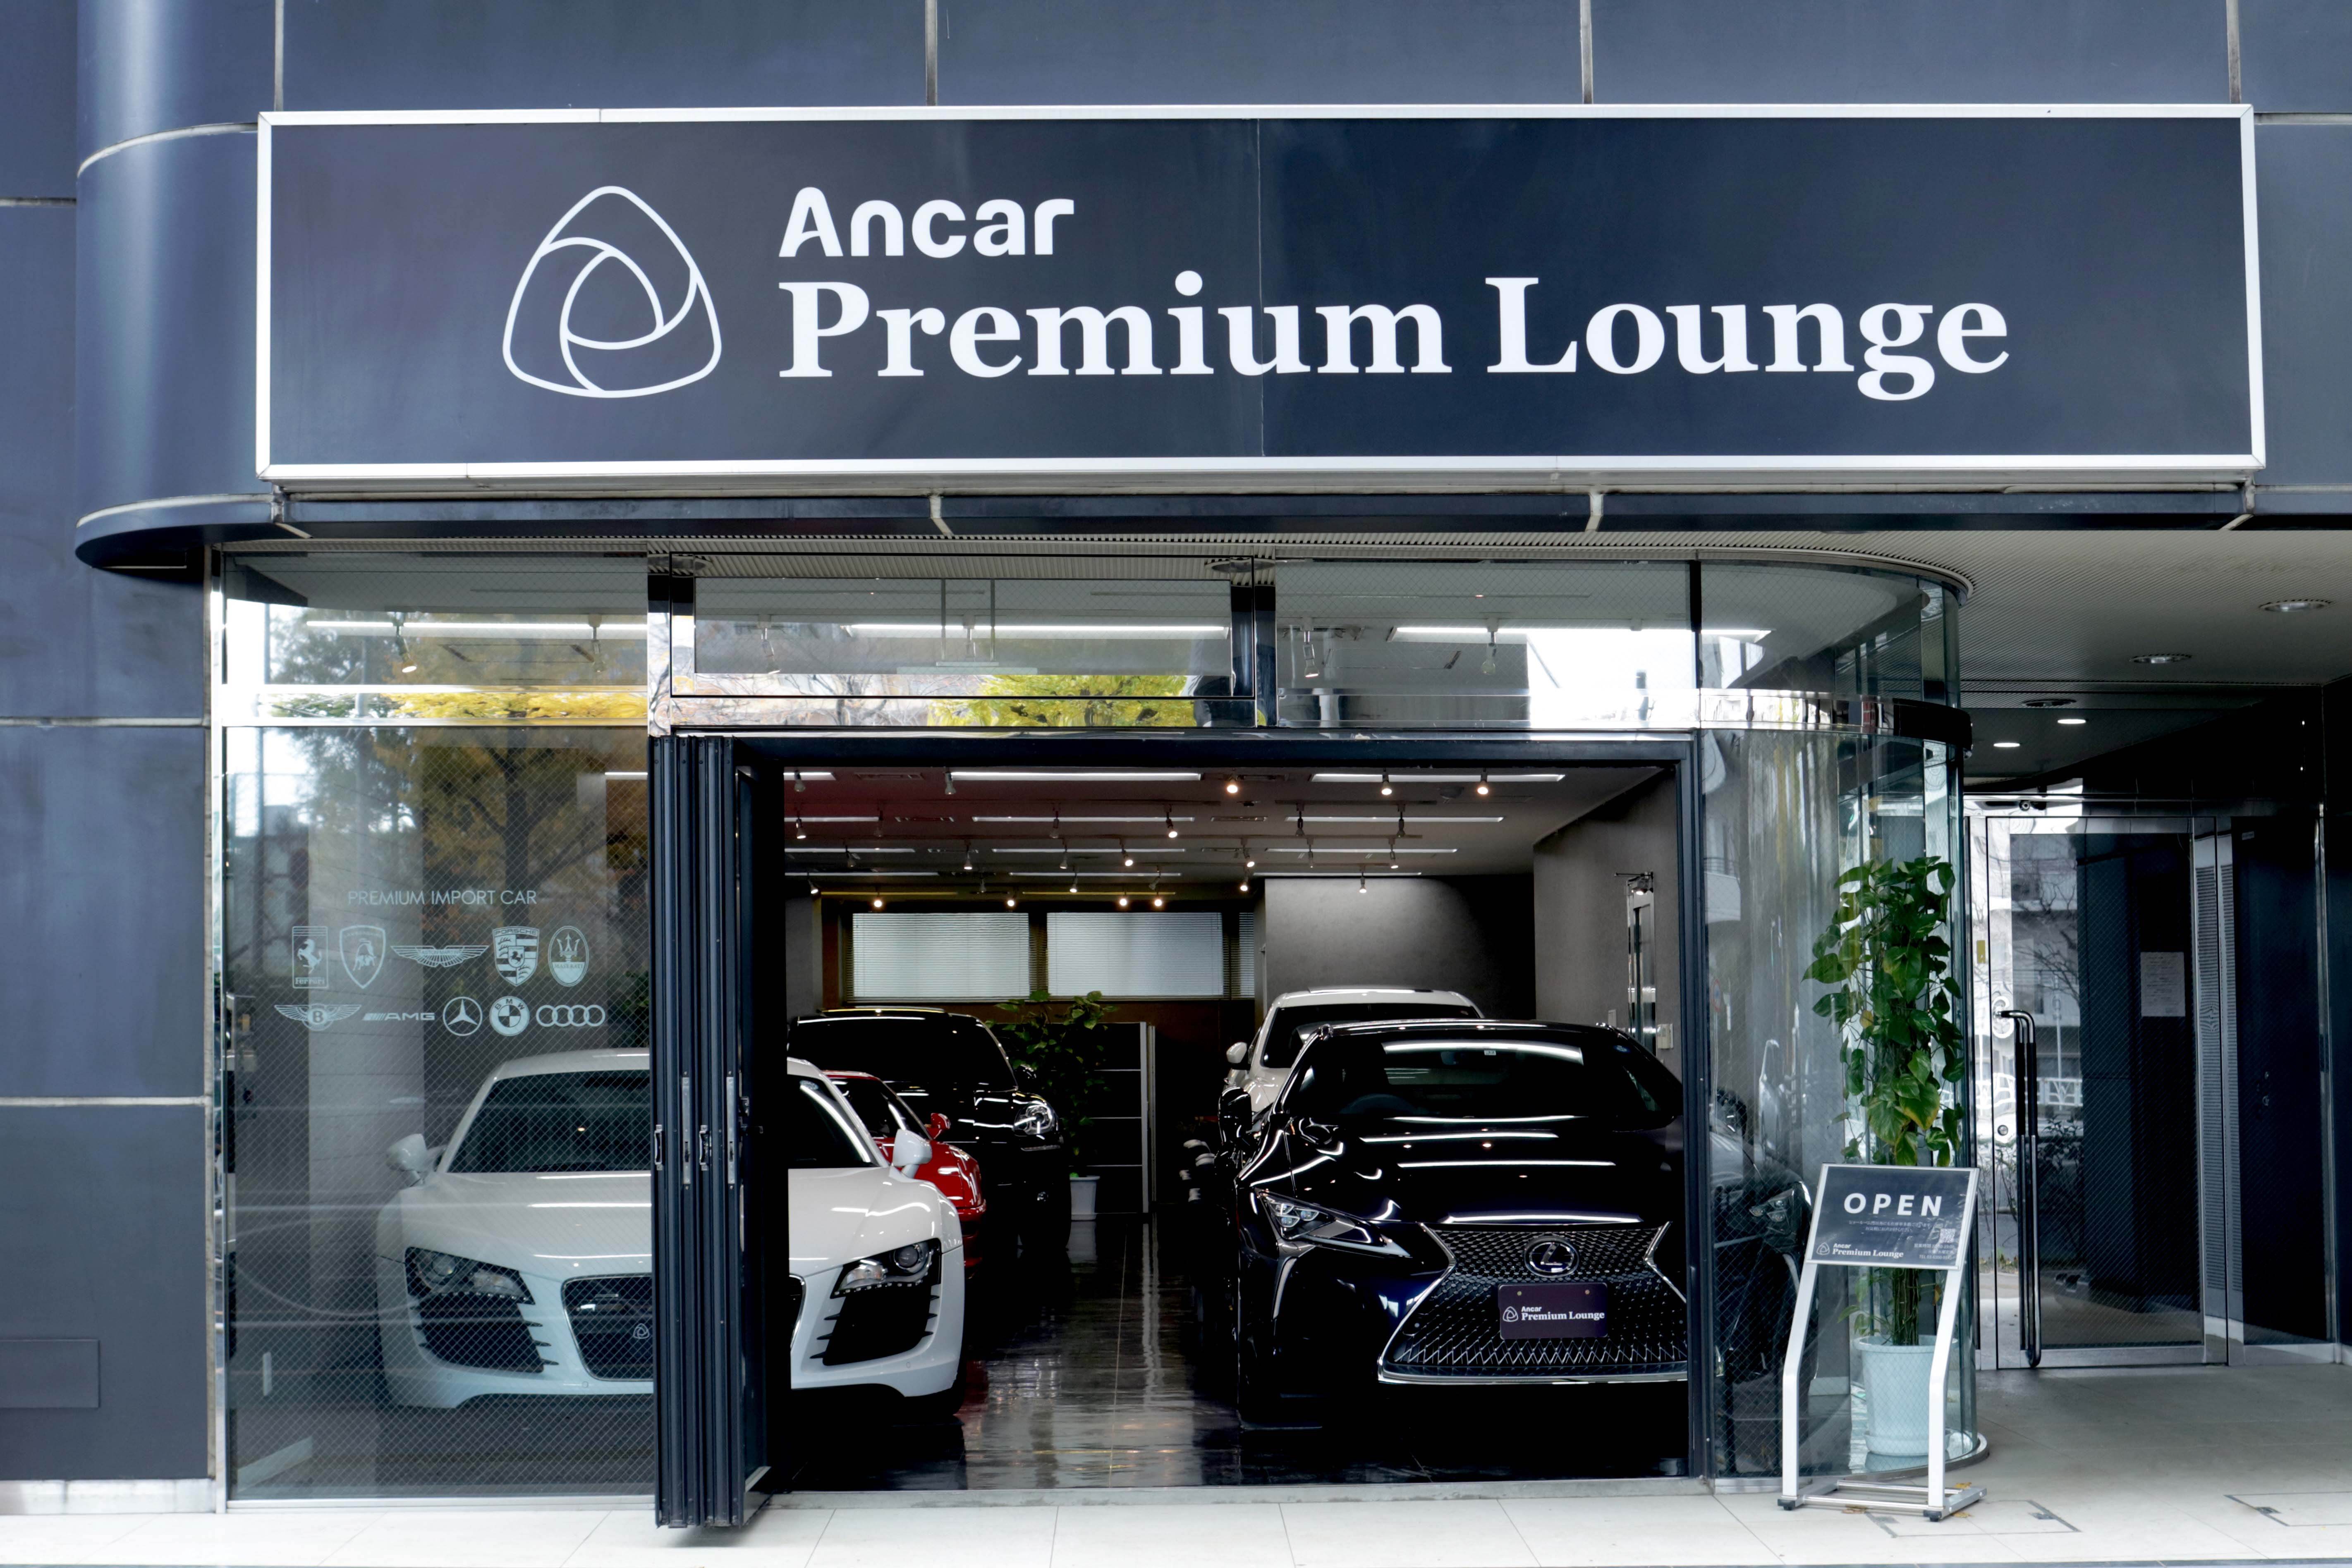 Ancar Premium Lounge